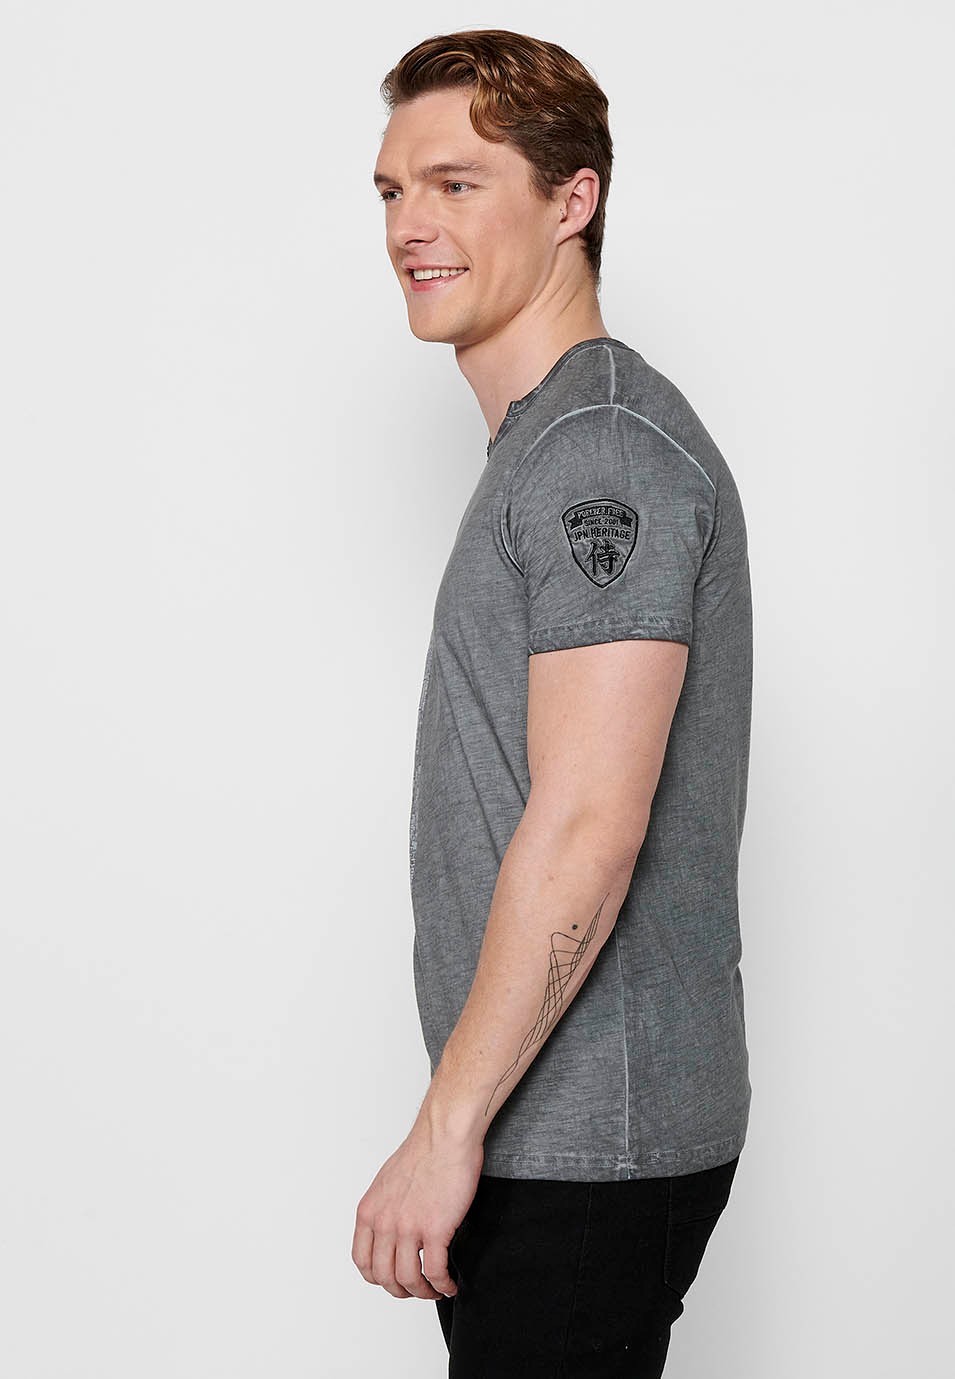 Camiseta de algodón manga corta, cuello pico con adorno de botones, color gris para hombre